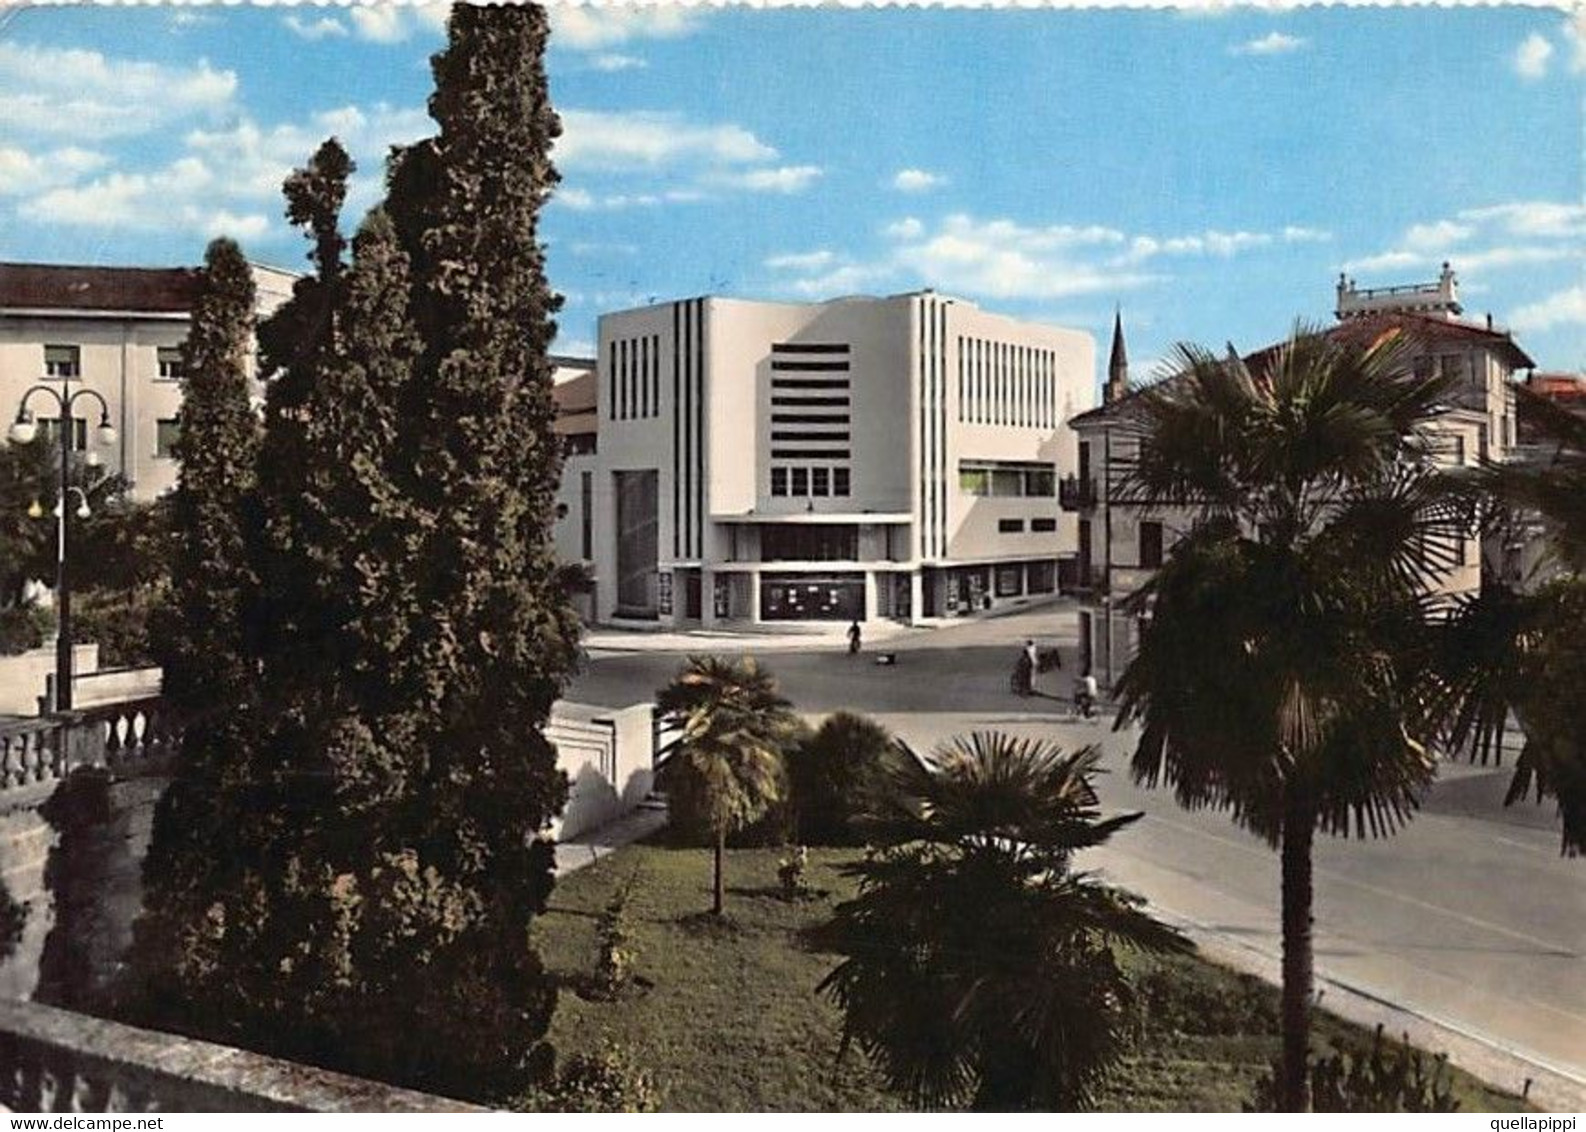 014181 "PORDENONE - CINEMA TEATRO VERDI" VERA FOTO.  CART SPED 1960 - Pordenone